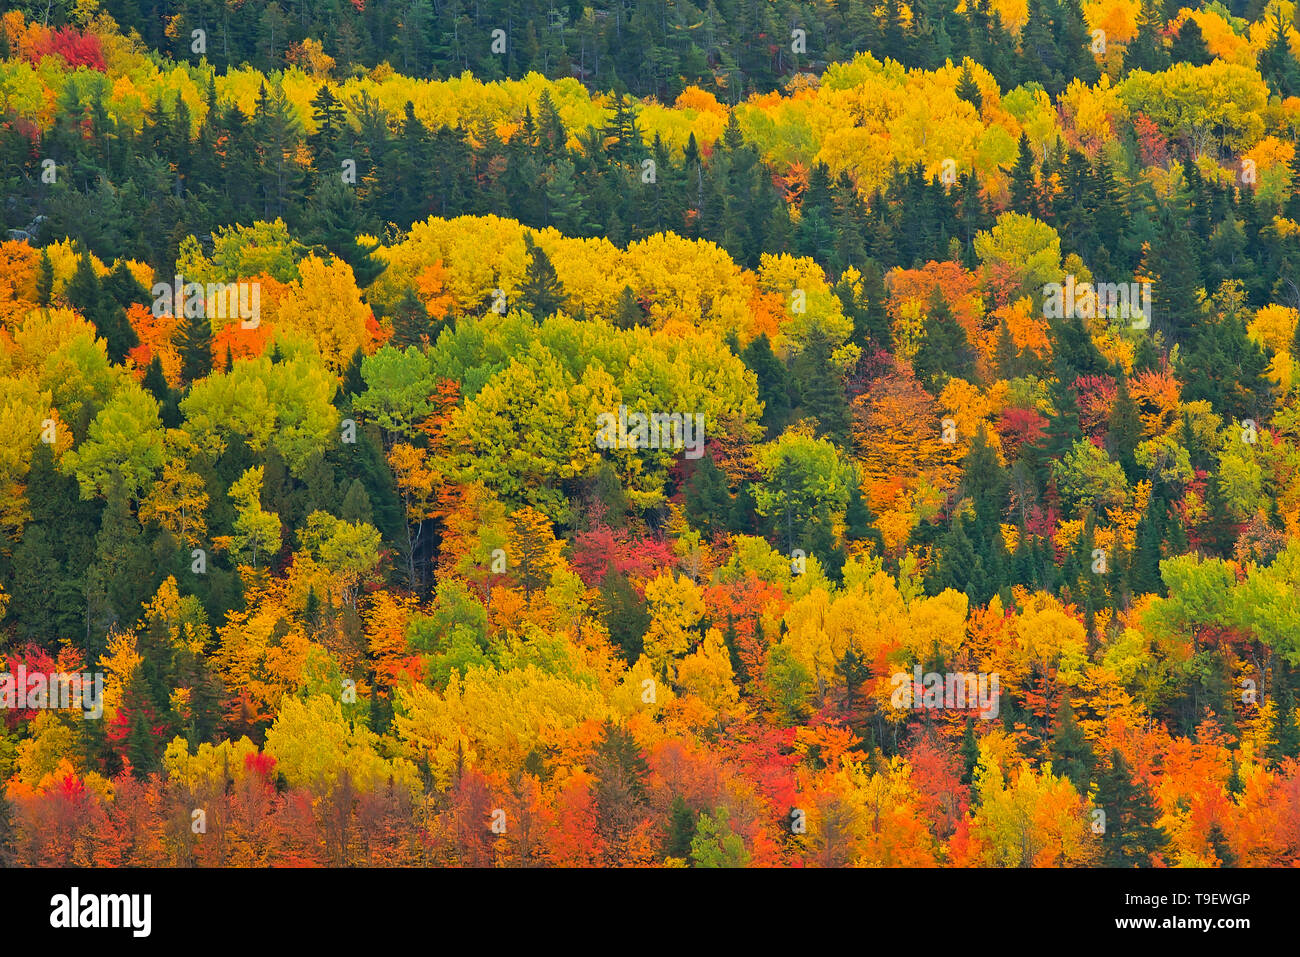 Couleurs d'automne de la forêt mixte dans les Monts Notre-Dame (Appalaches). Grands Lacs - Fleuve Saint-Laurent région forestière. Saint-Pacôme Québec Canada Banque D'Images